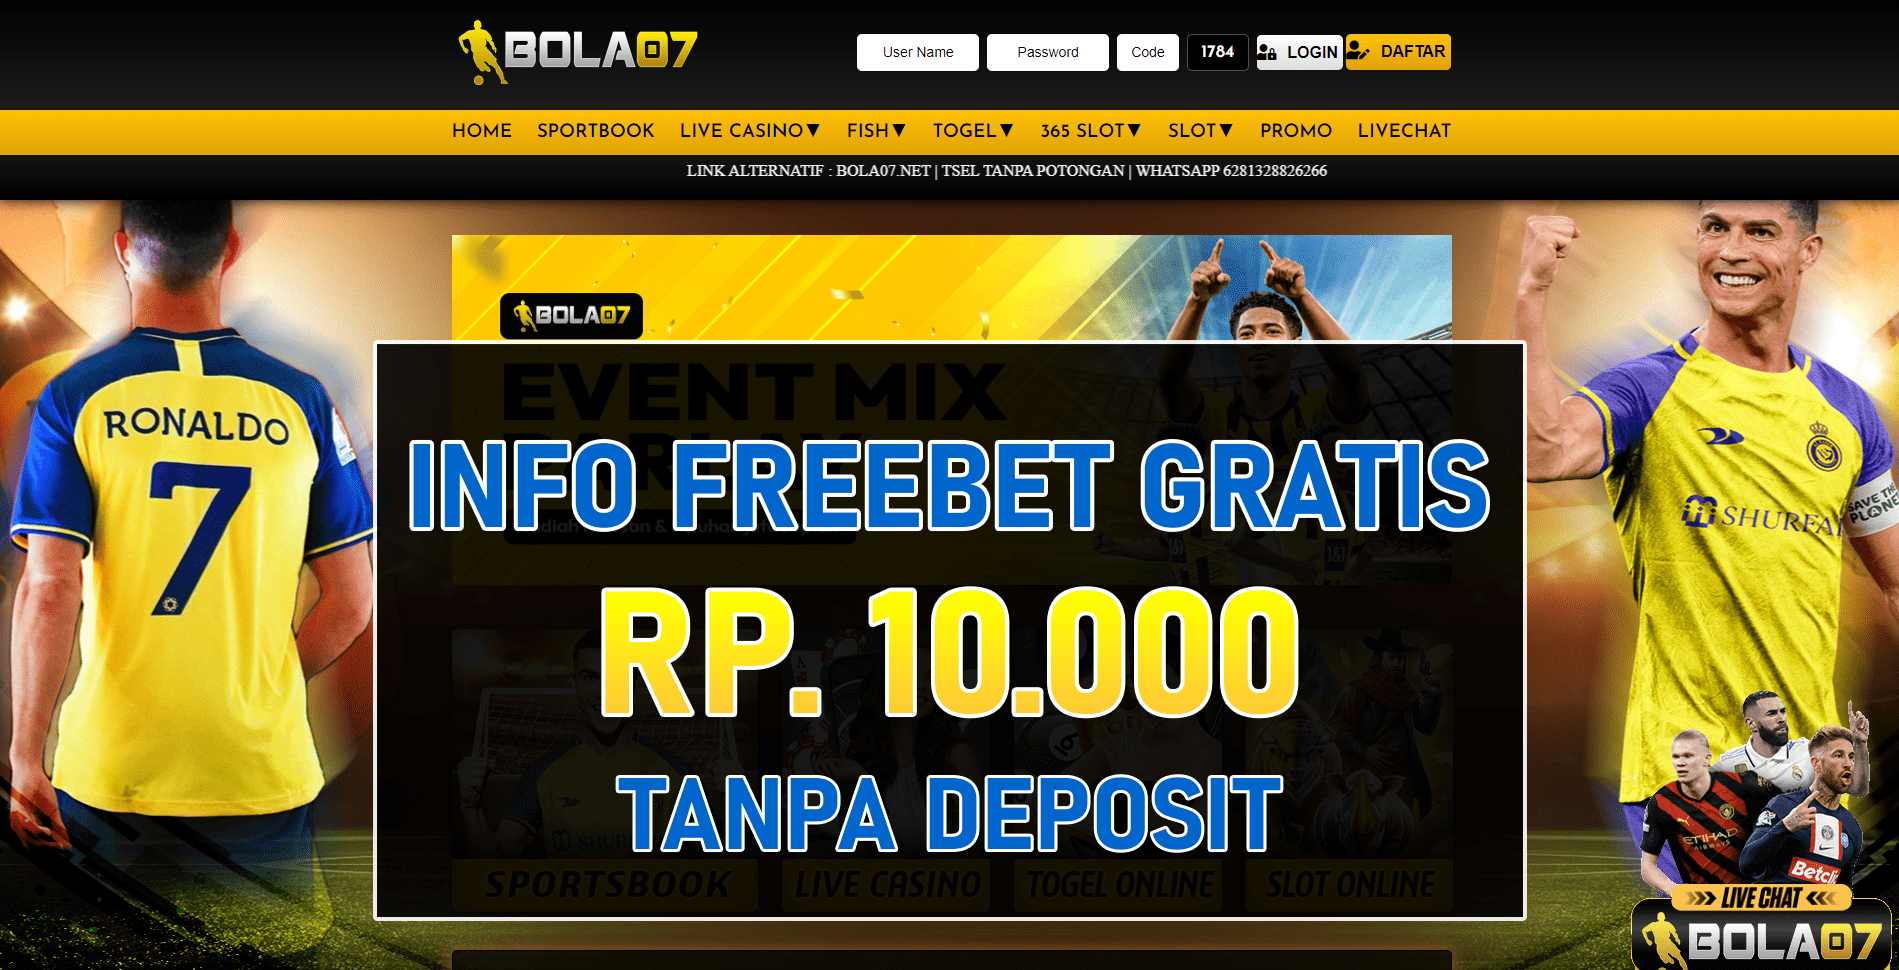 Freebet Bola07 Tanpa Deposit